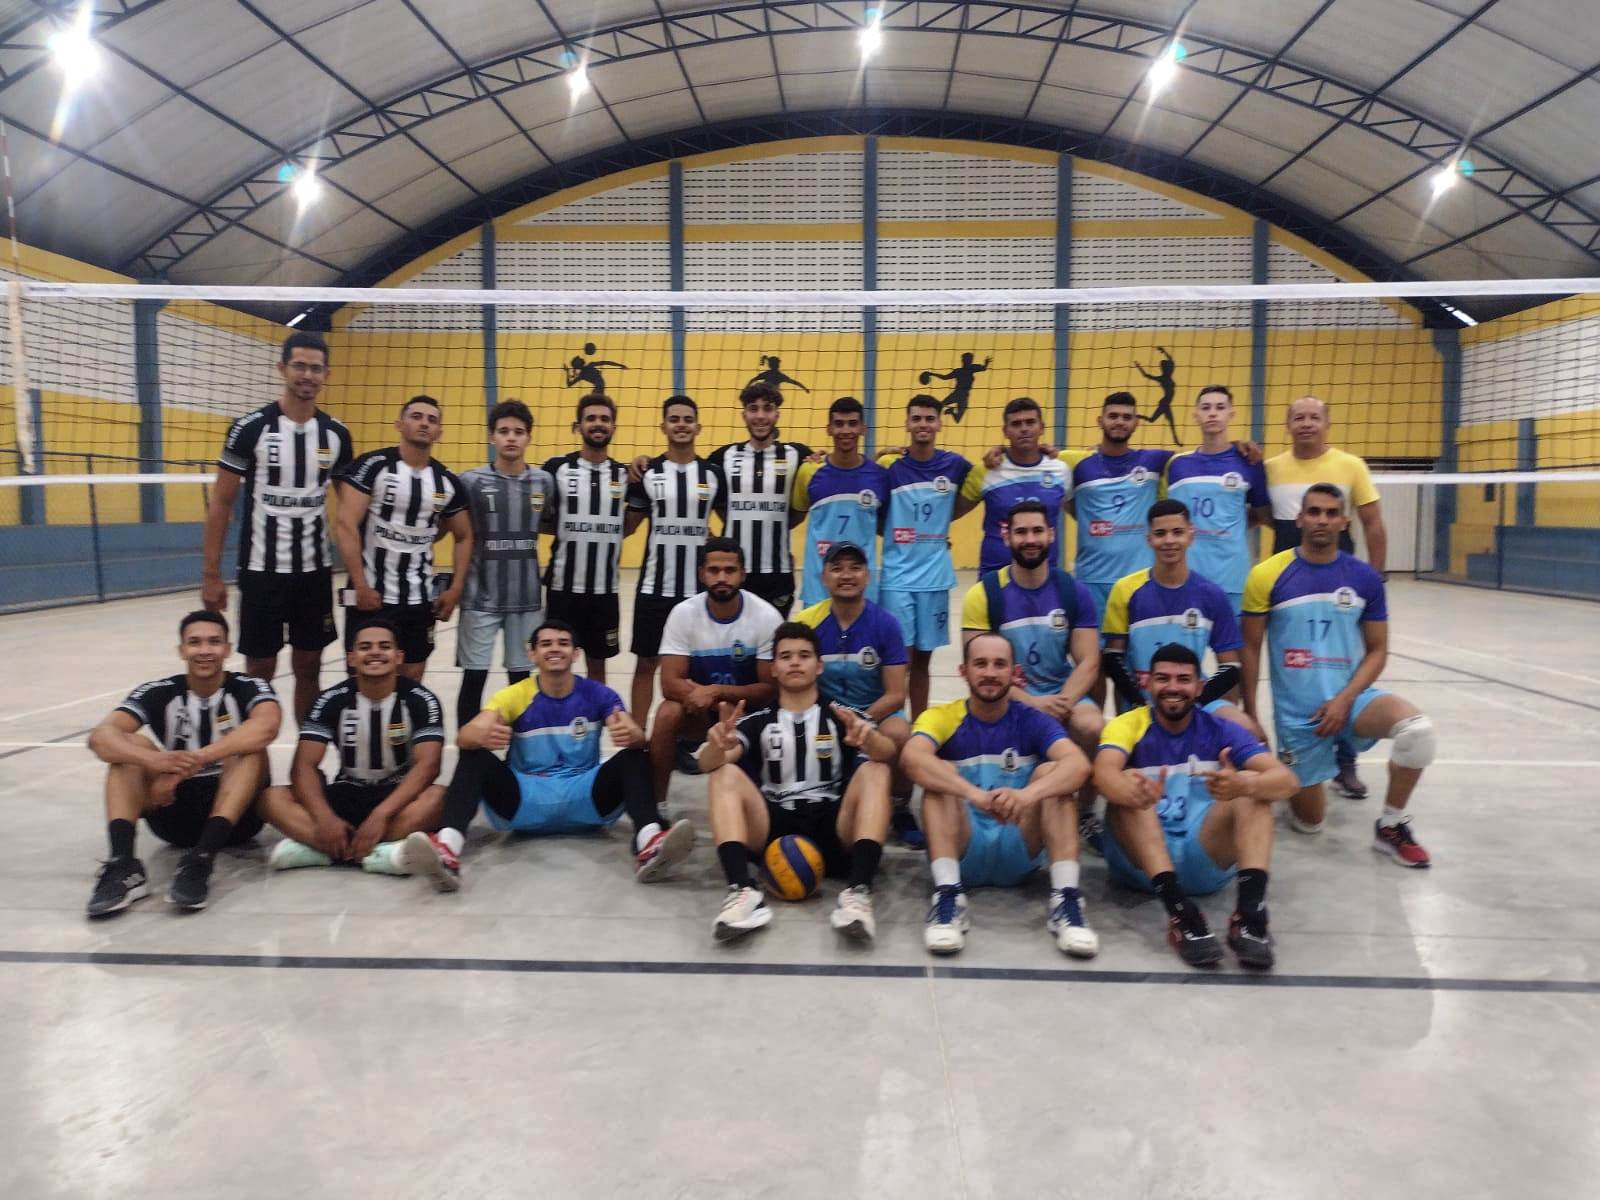 10.13.18 Prefeitura de Monteiro apoia voleibol masculino e feminino em amistoso intermunicipal